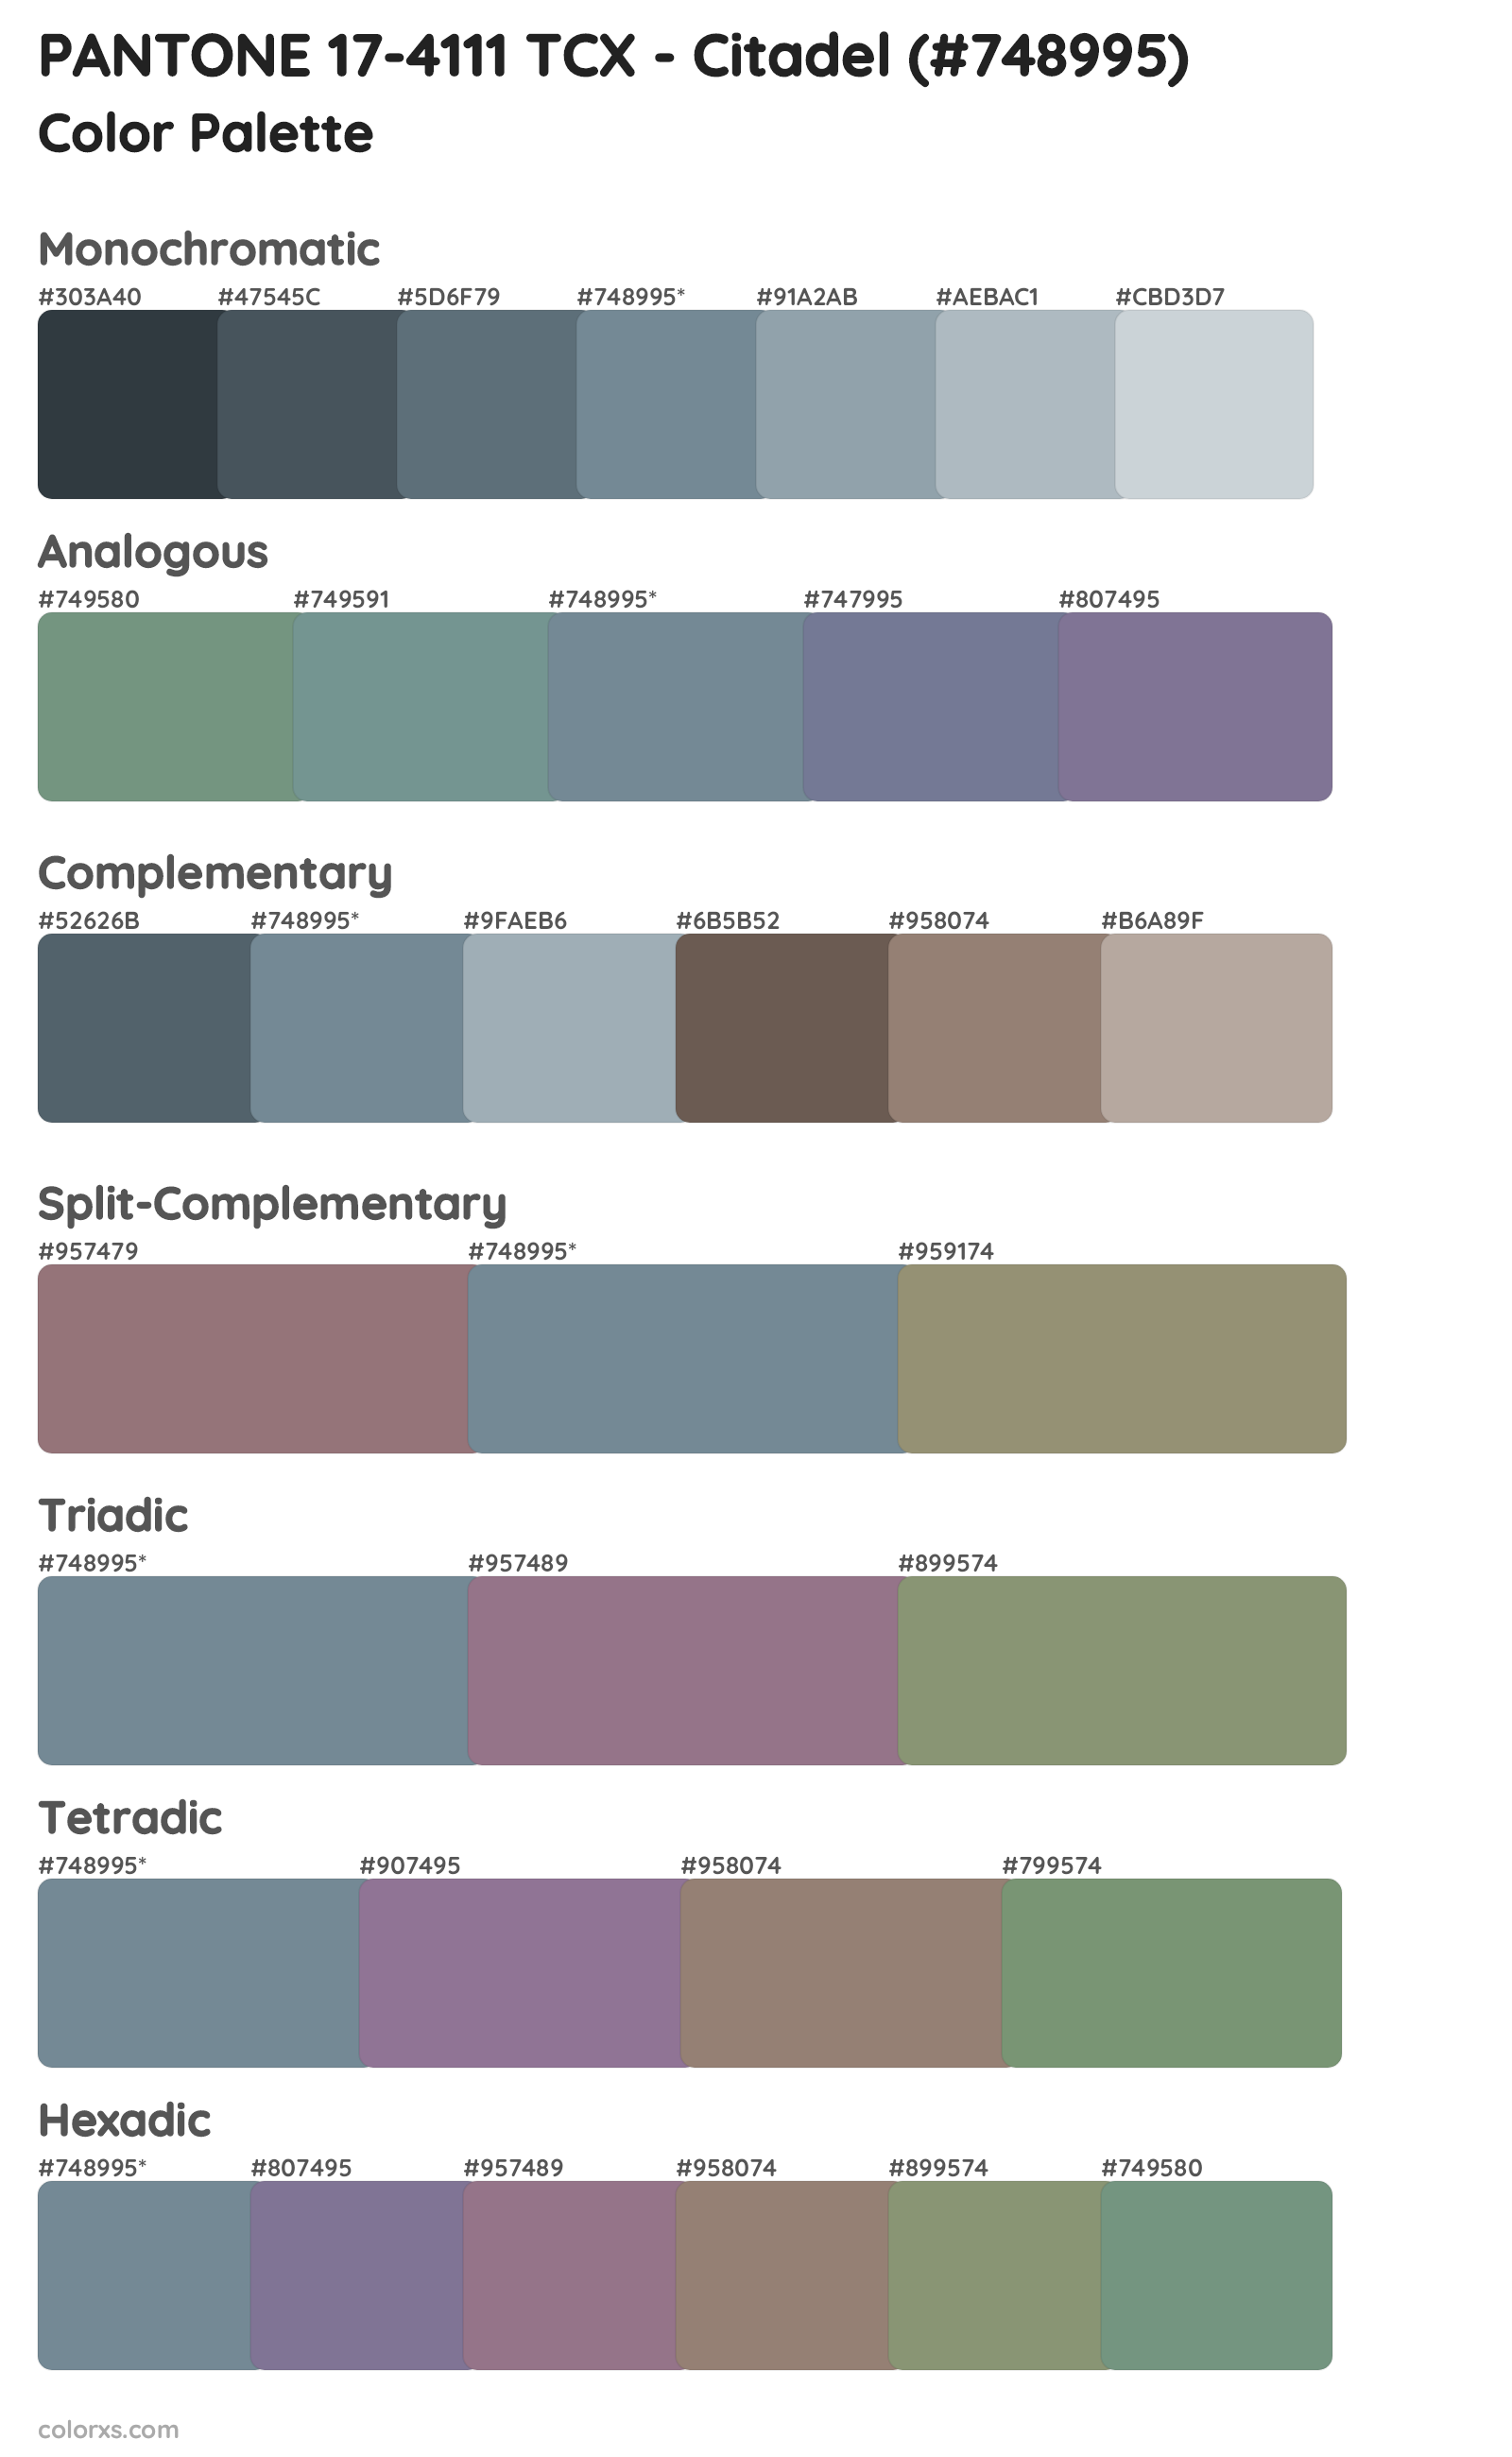 PANTONE 17-4111 TCX - Citadel Color Scheme Palettes